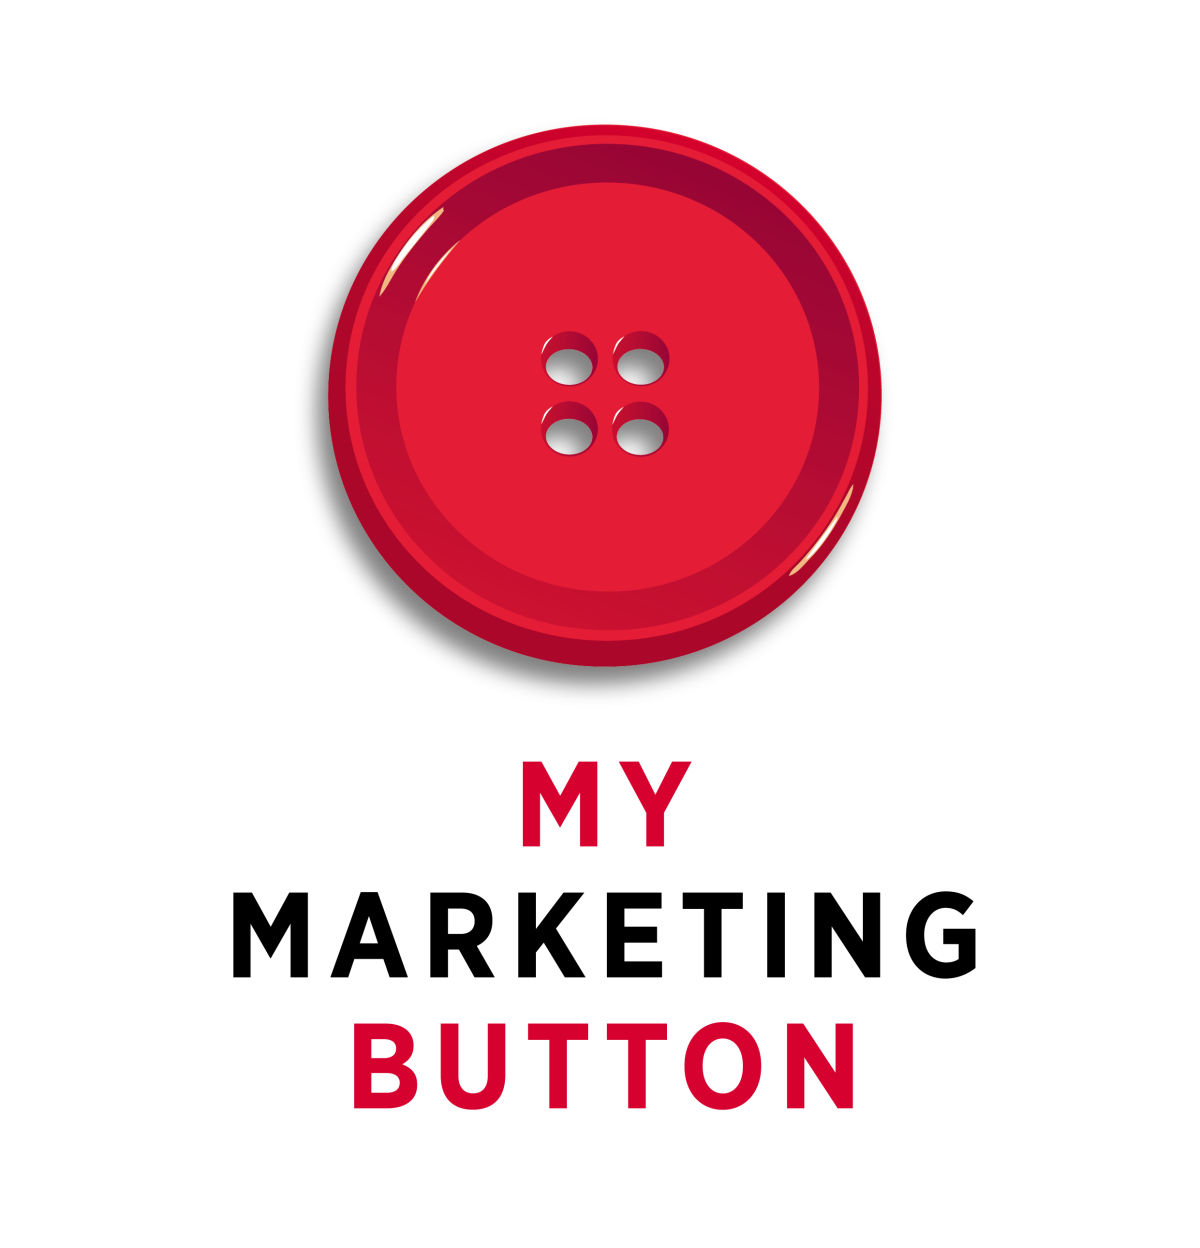 My marketing button vert